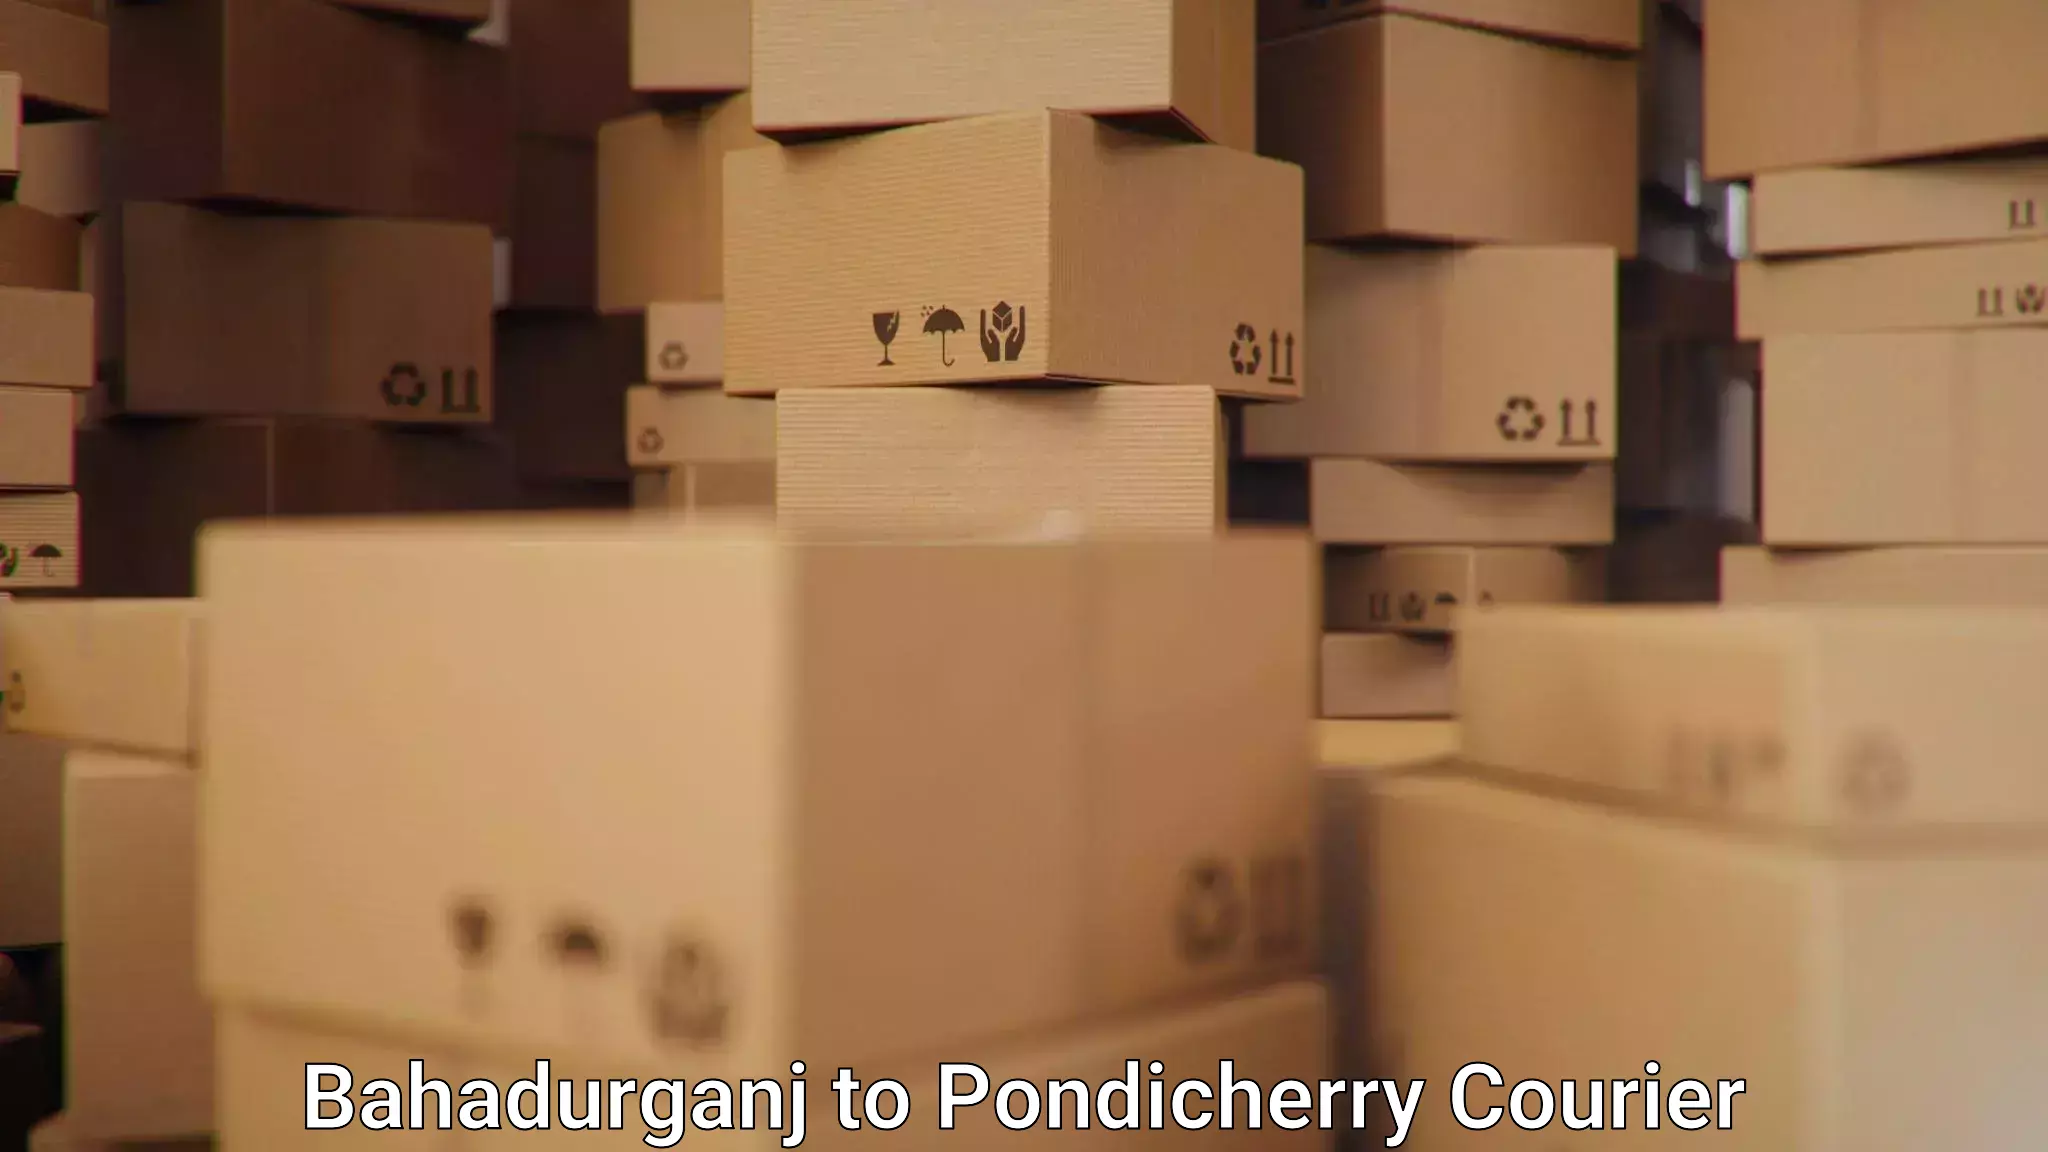 Reliable courier service Bahadurganj to Pondicherry University